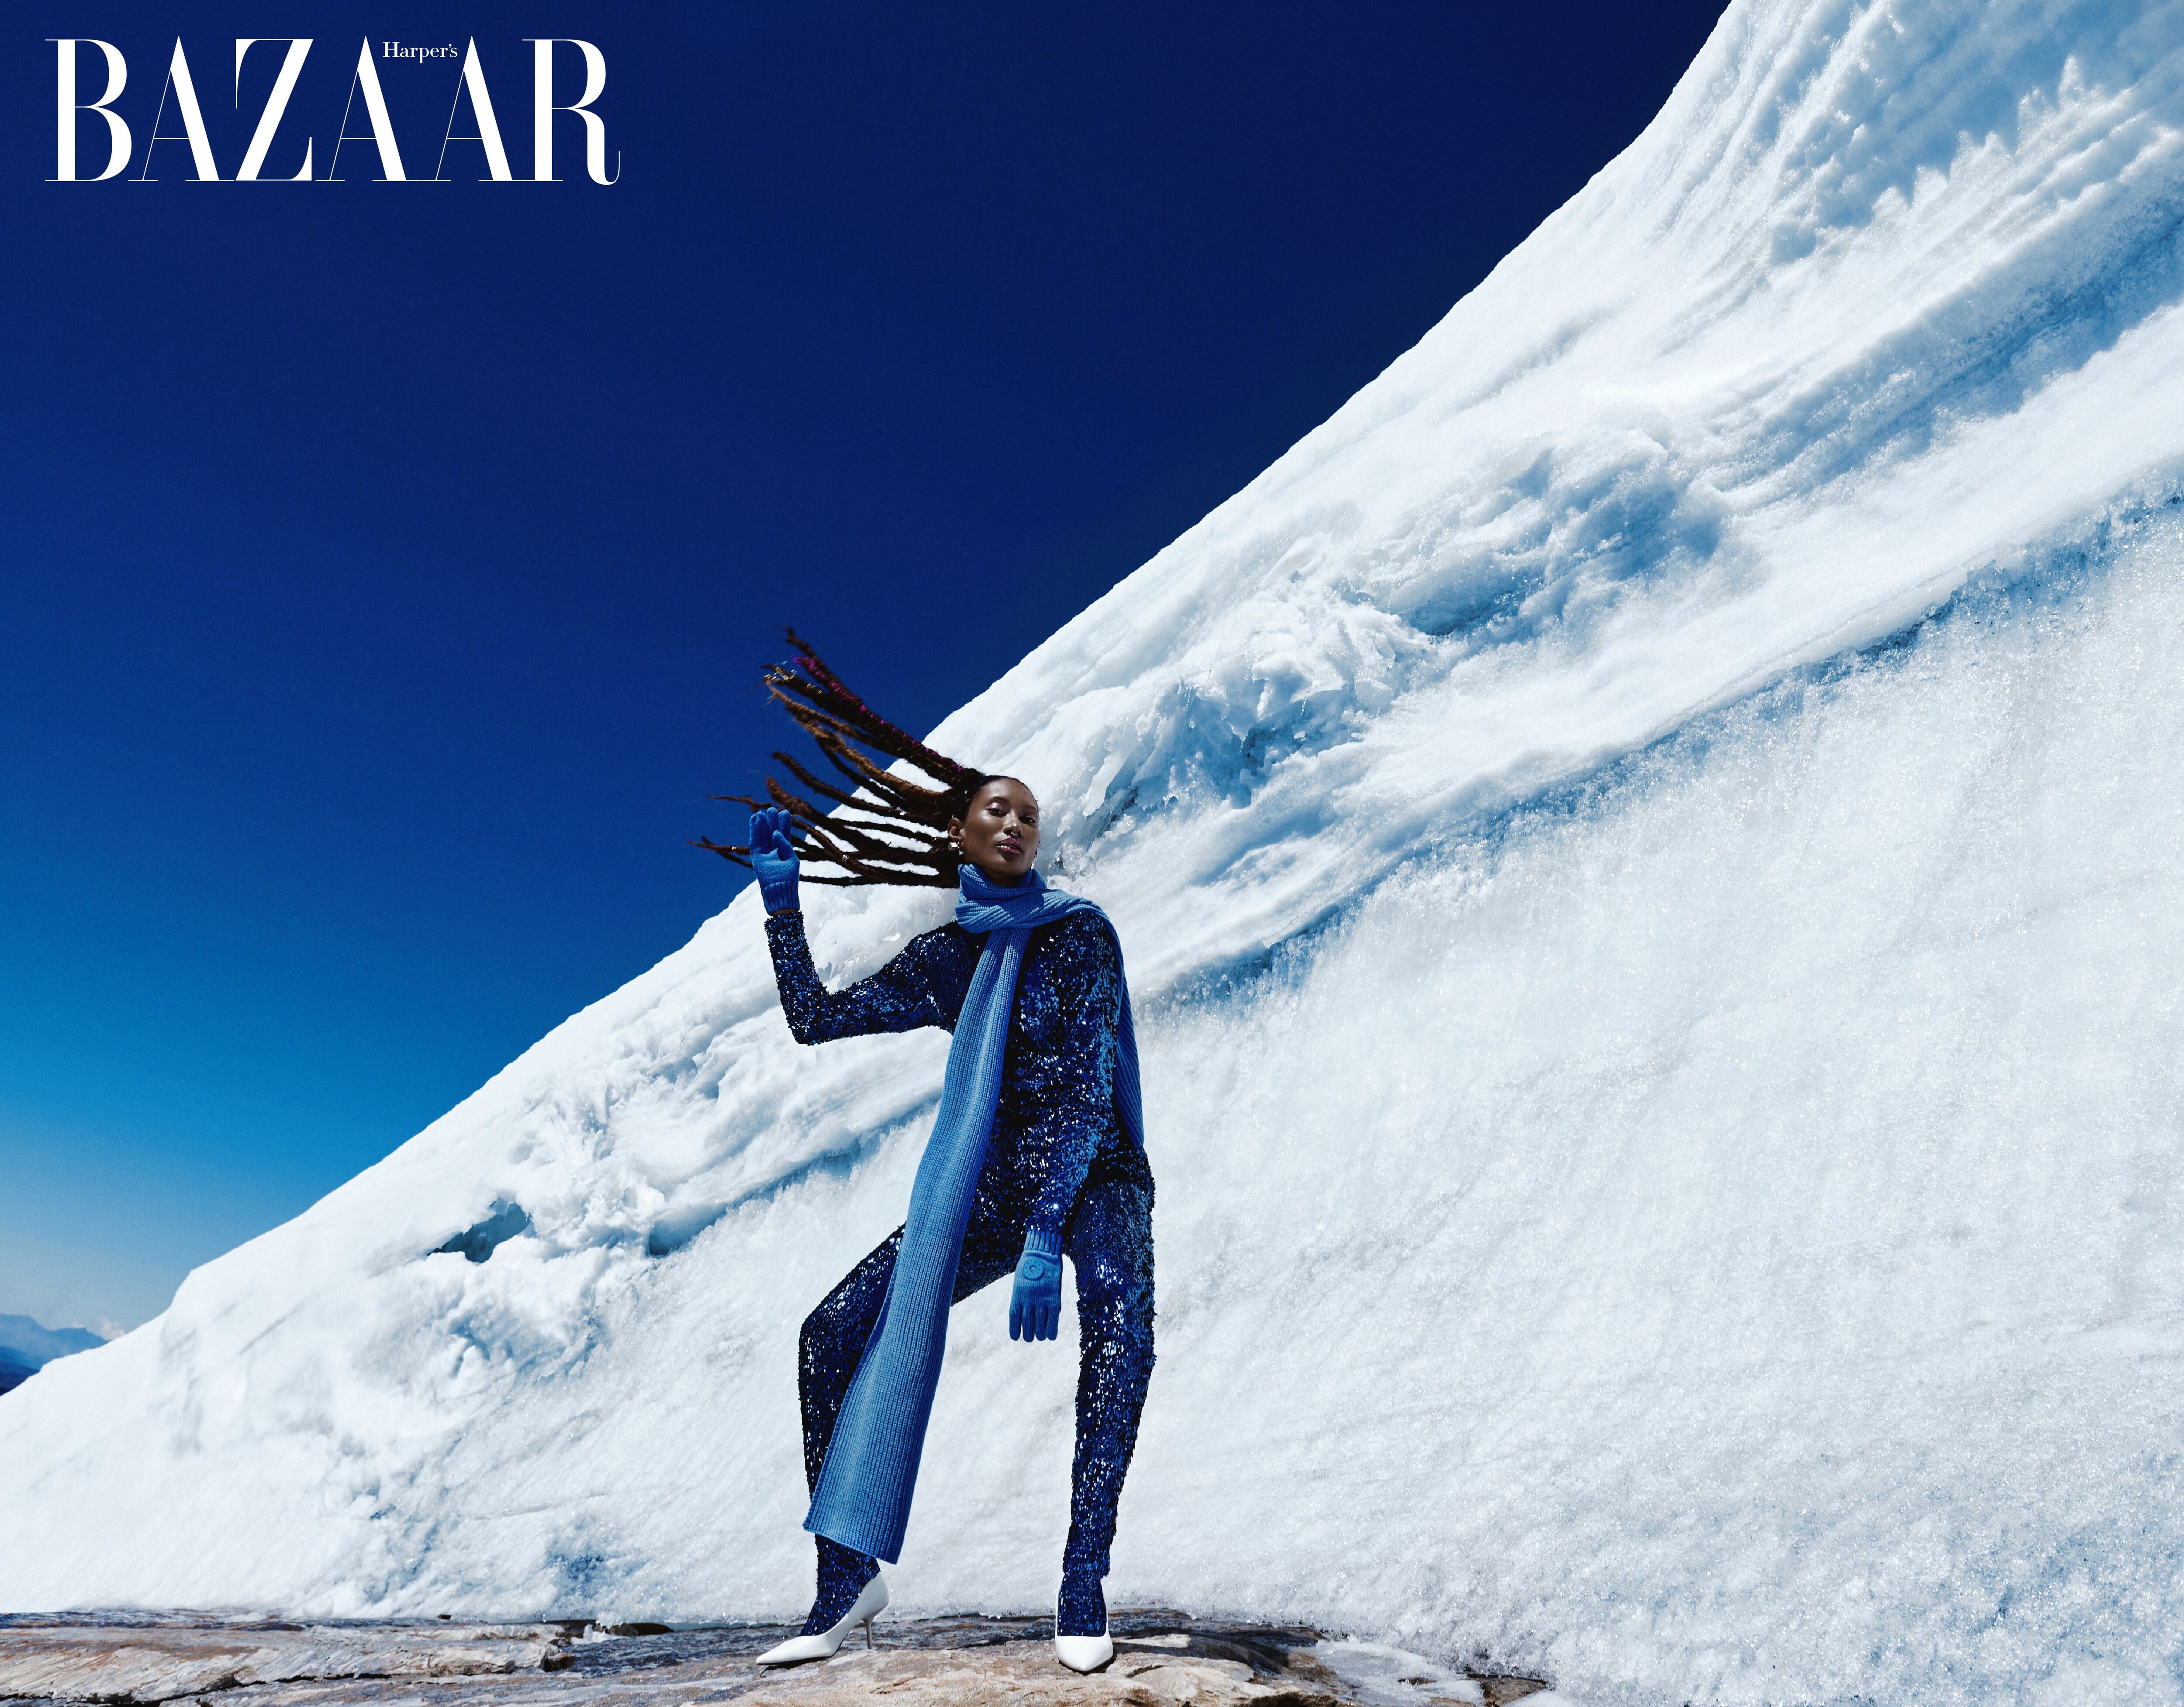 Modelo posa en conjunto azul elegante contra un impactante fondo de hielo para Harper's BAZAAR.